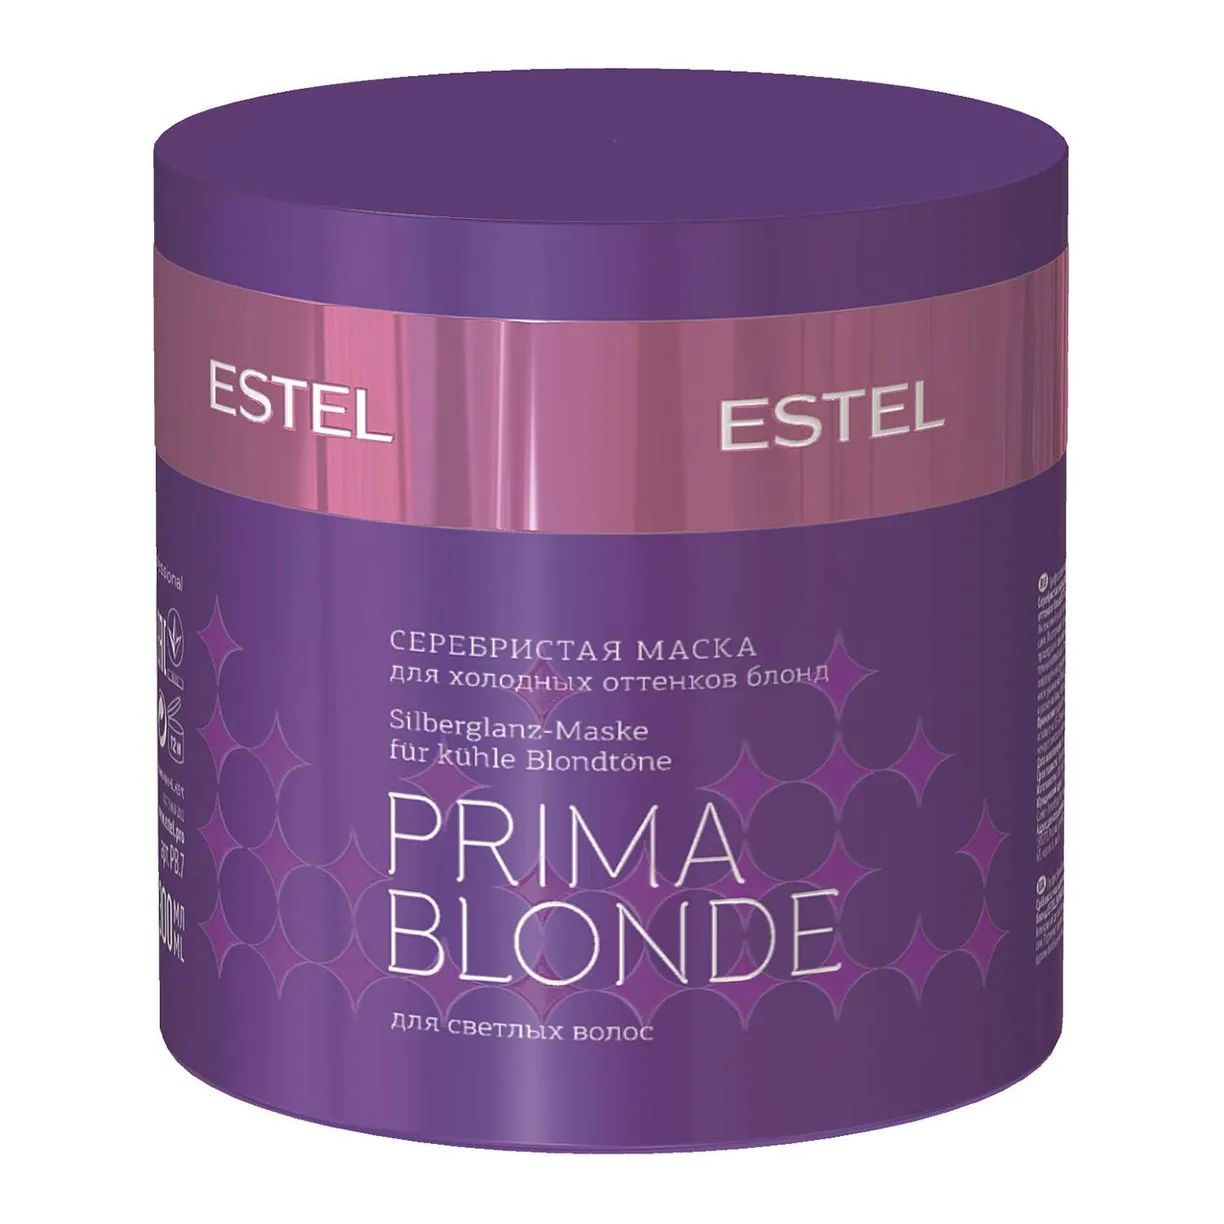 Маска для волос Estel Professional Prima Blonde Mask 300 мл revlon professional перманентный краситель colorsmetique intense blonde 1200 натуральный блондин 60мл